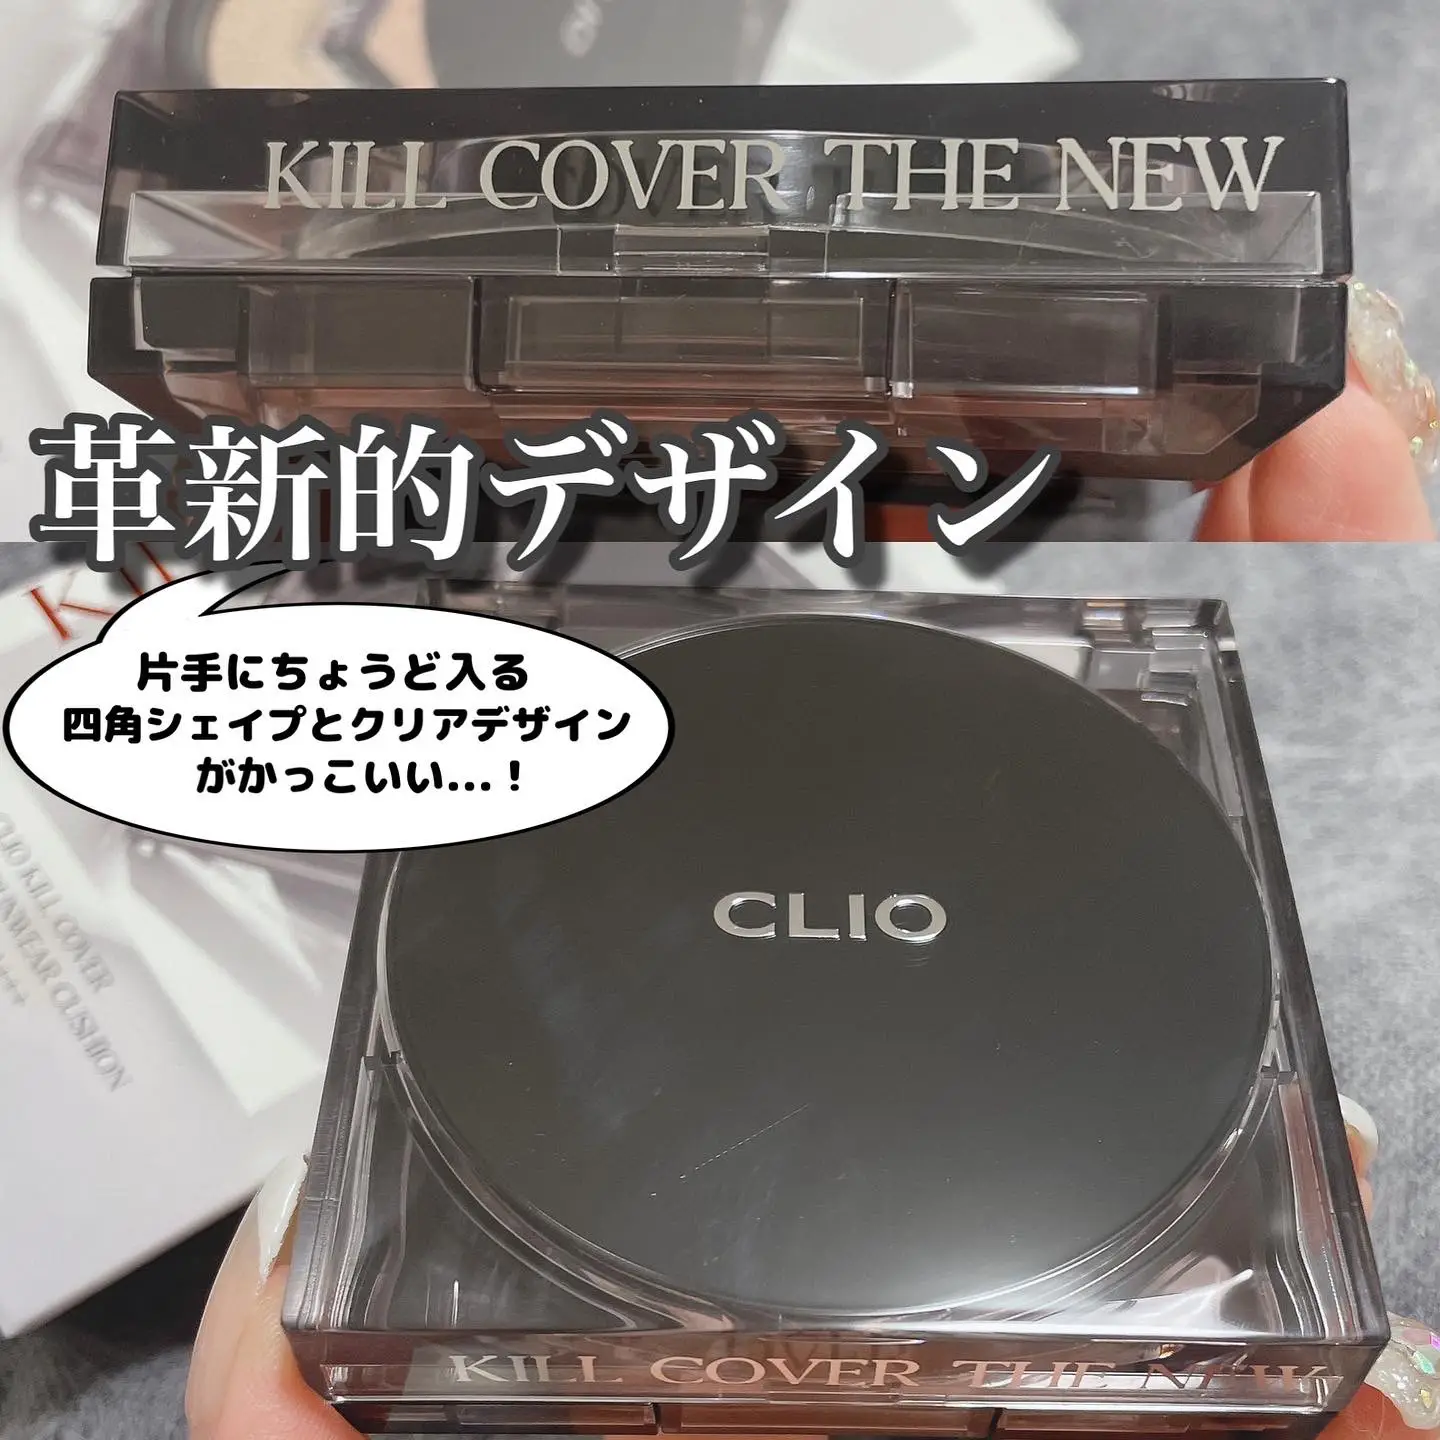 CLIO新作♡キルカバーザニューファンウェアクッションの画像 (3枚目)